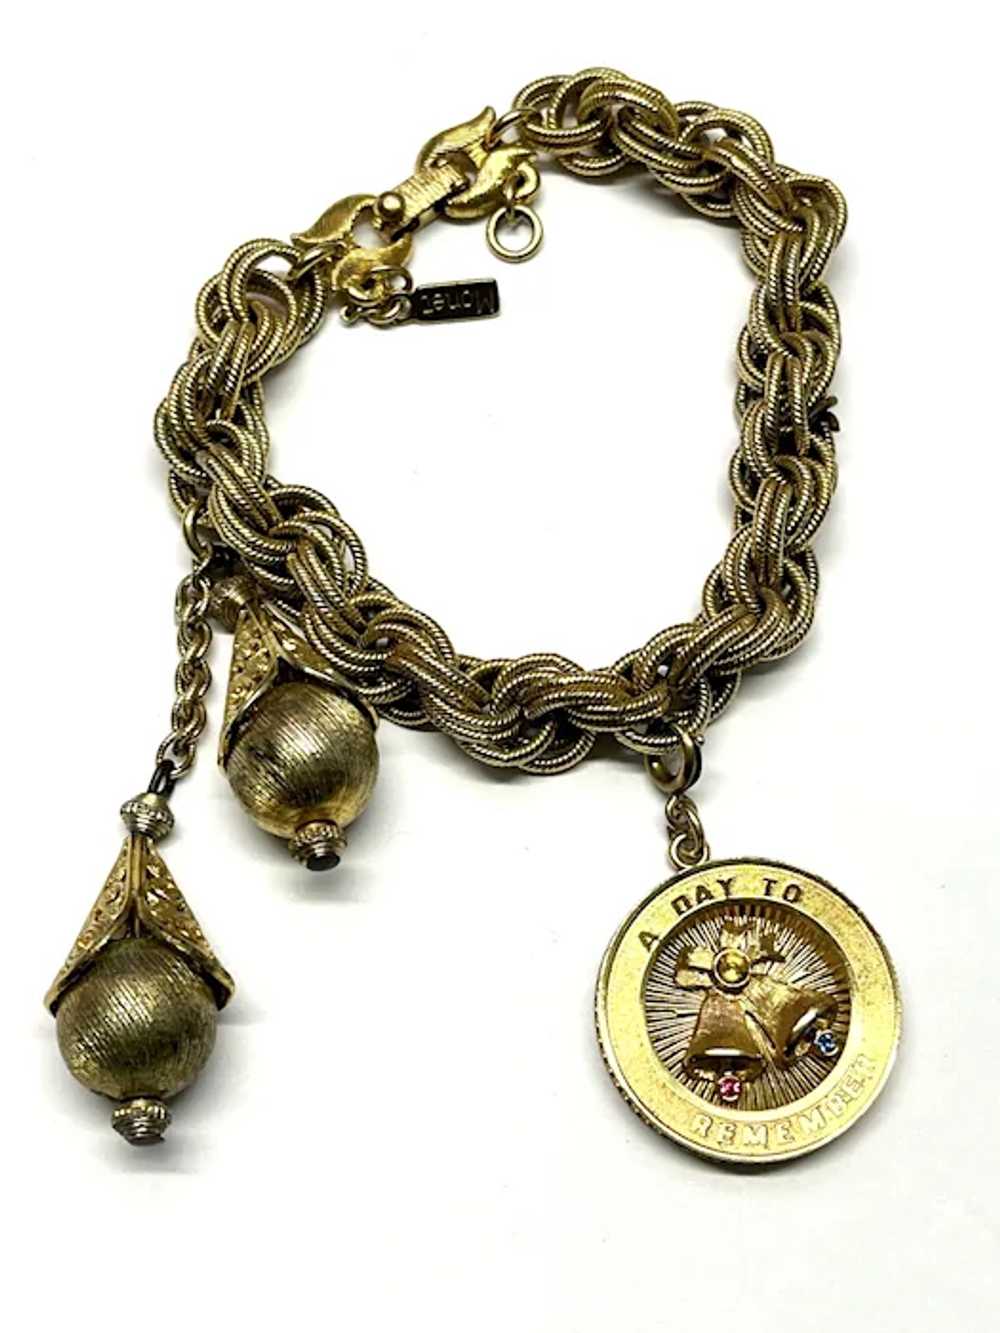 Vintage Monet Gold Charm Bracelet - image 2